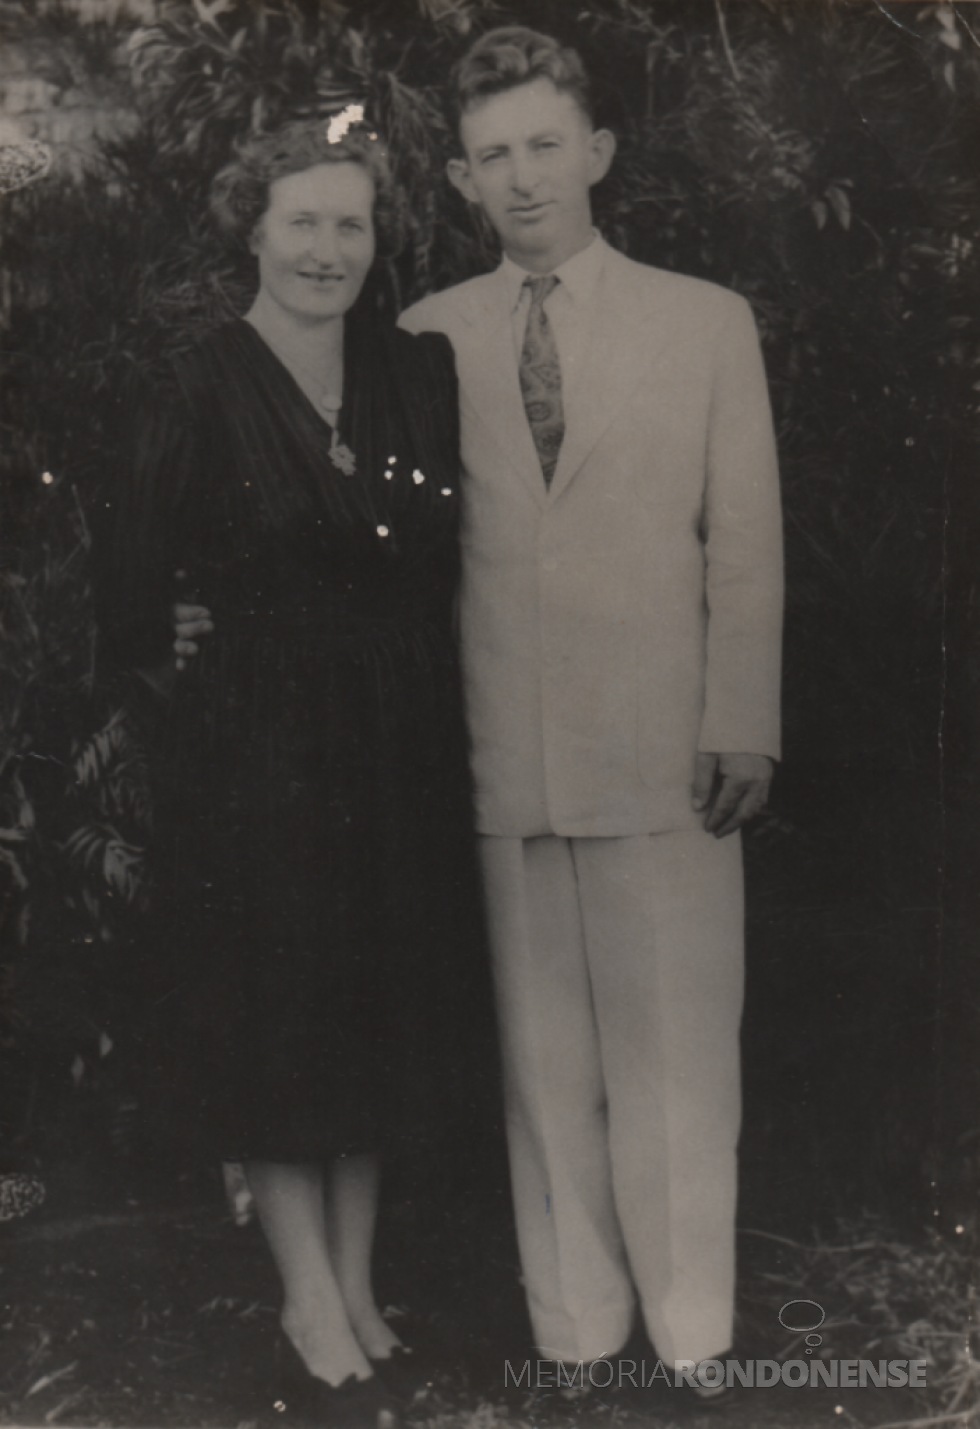 || Professor rondonense Arnoldo Alfredo Hintz com a esposa Adeline, em foto de 1950, ele falecido em agosto de 1988.
Imagem: Acervo Denise Roesler - FOTO 14 -